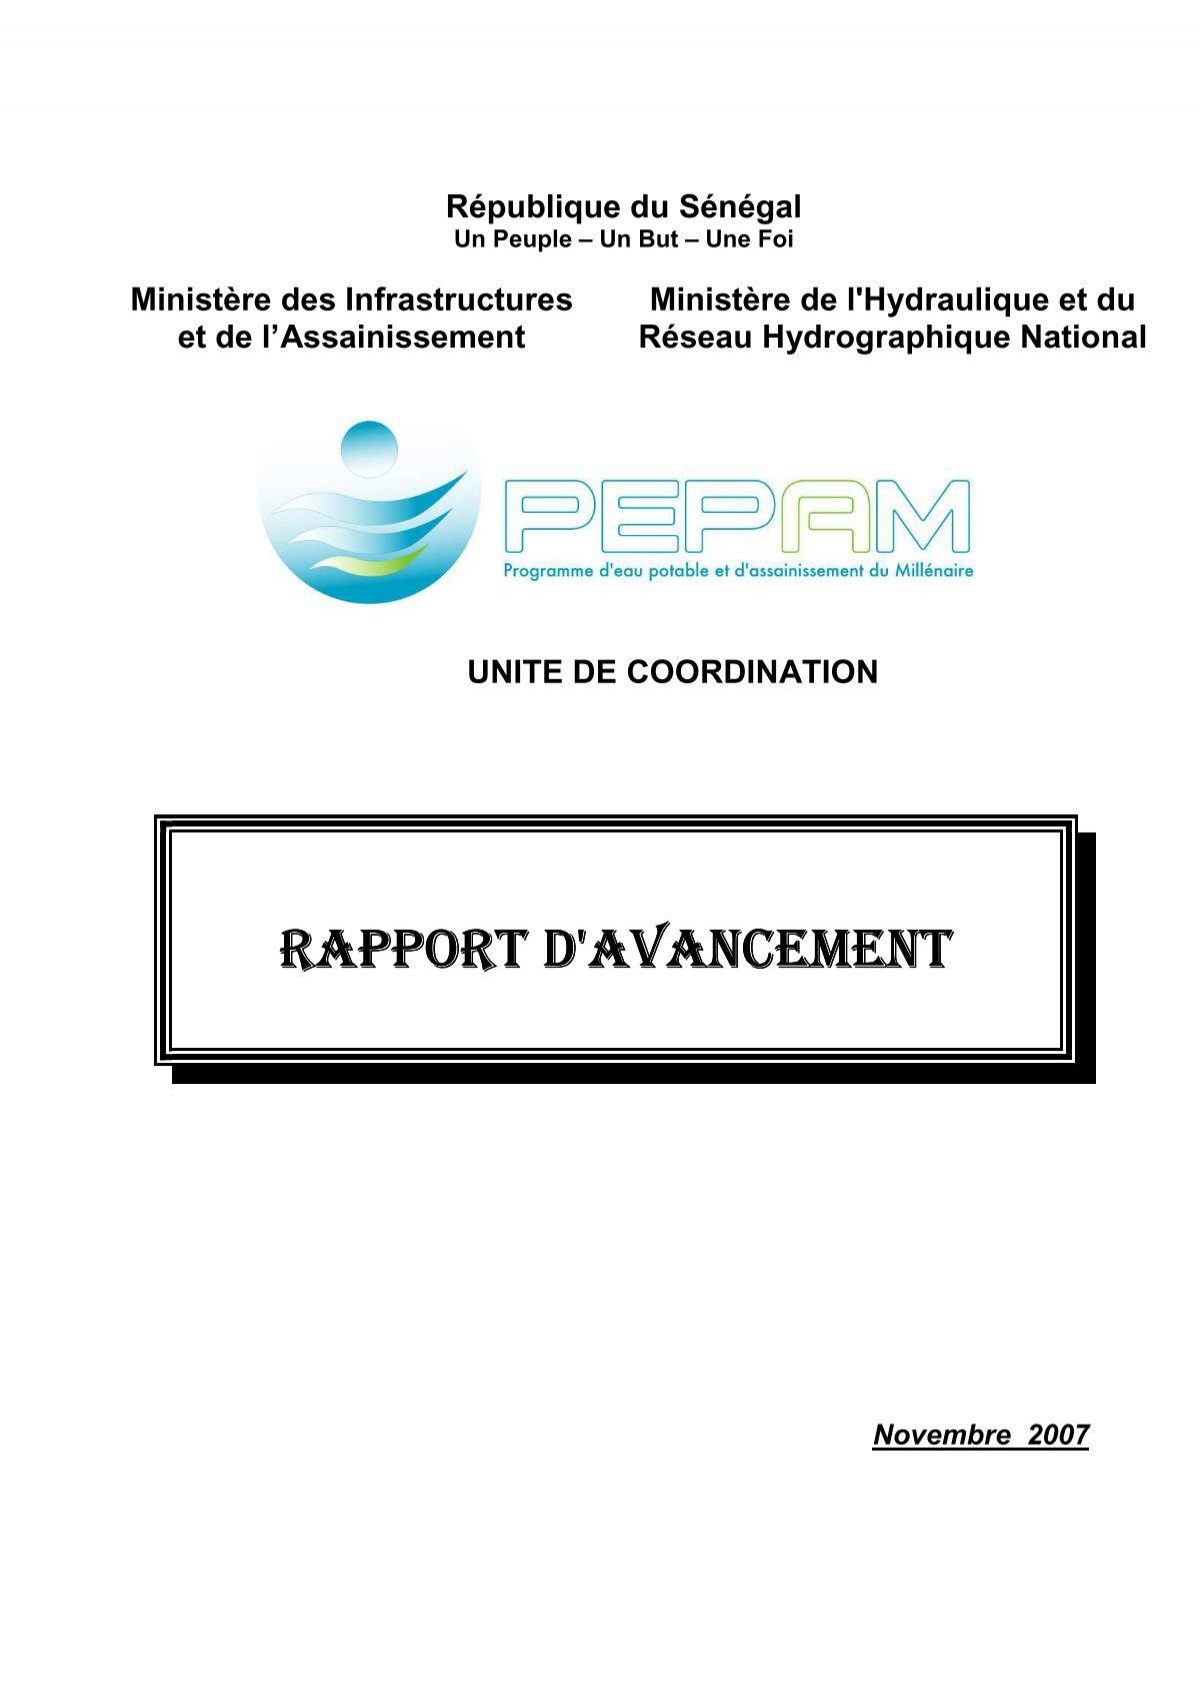 OPÉRATION DE RENOUVELLEMENT DE PIECES A L'USINE DU POINT B (Dakar